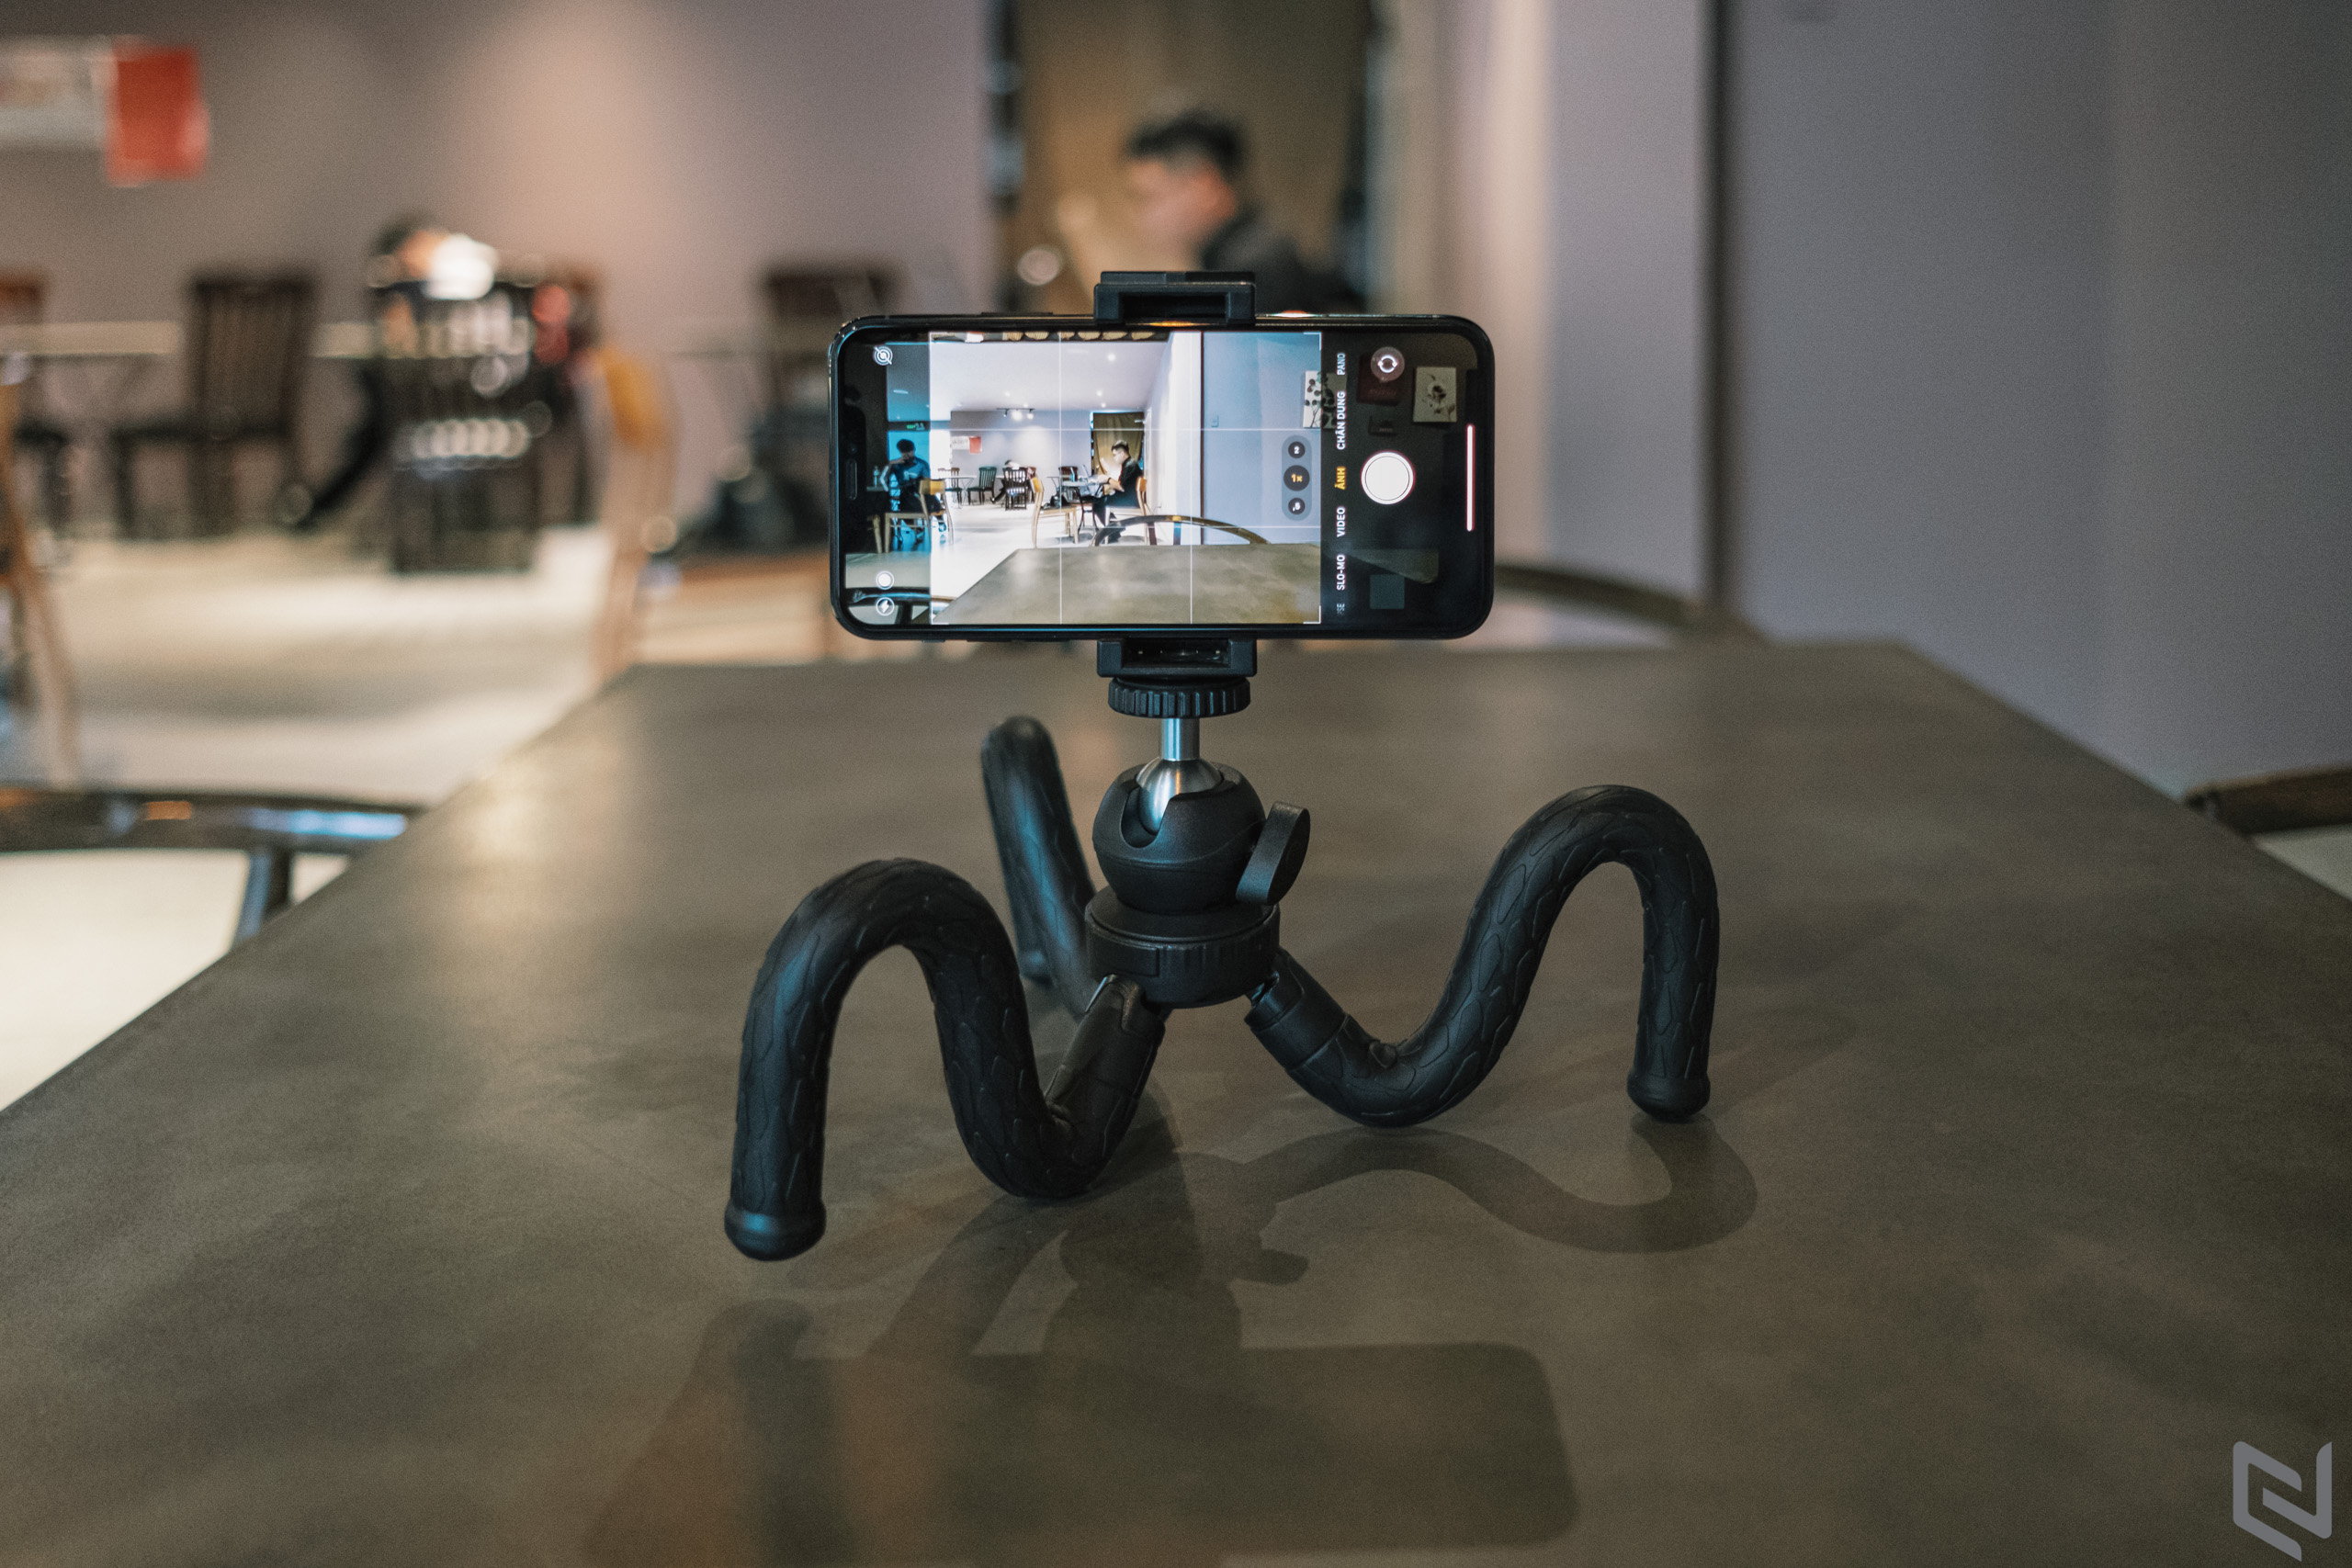 Trên tay bộ phụ kiện đưa quay phim bằng smartphone lên tầm cao mới